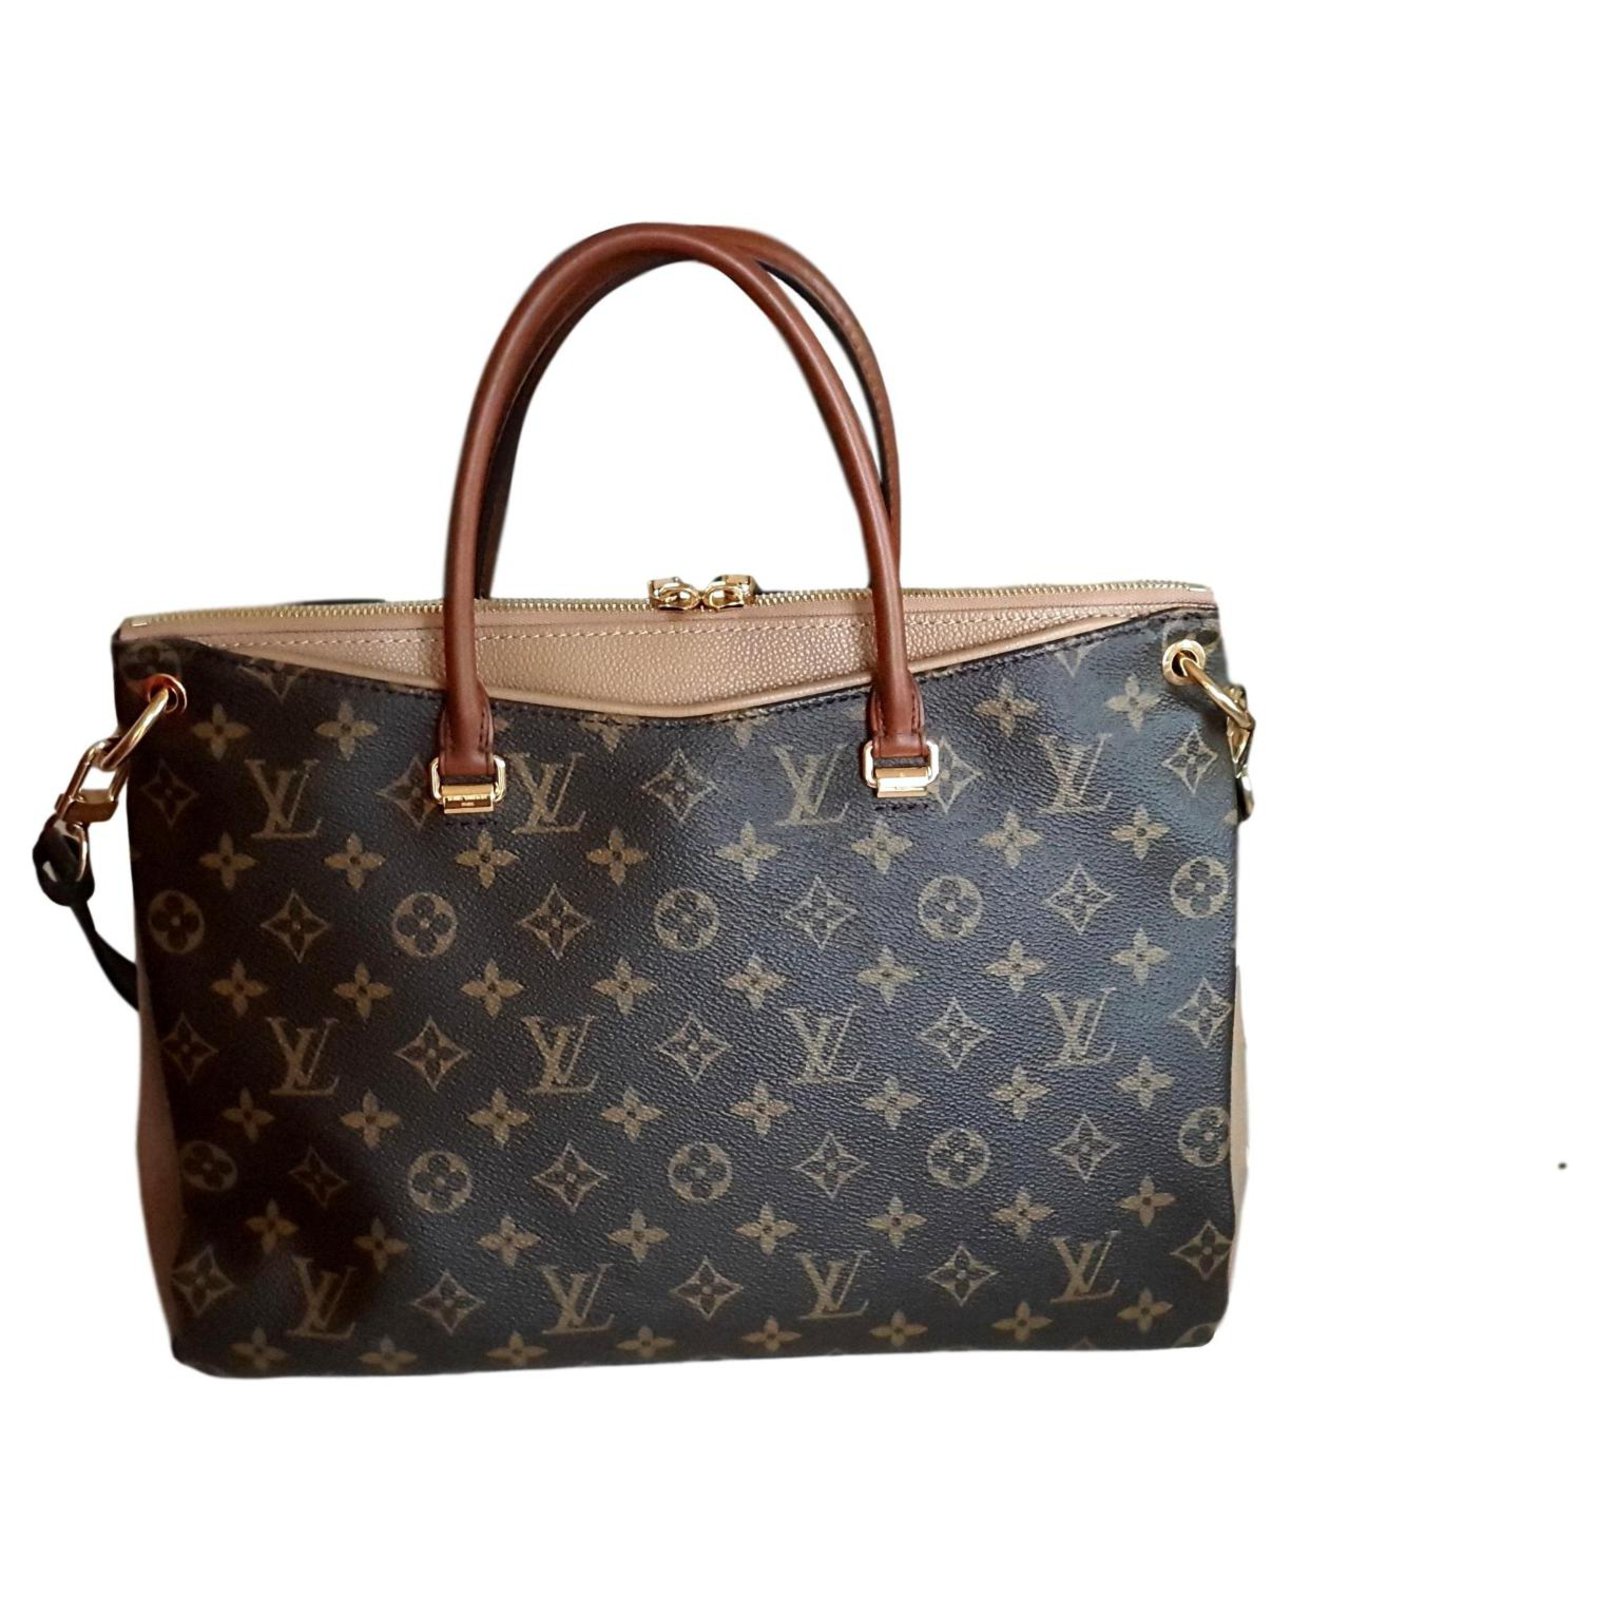 Louis Vuitton Monogram Pallas Tote - Brown Totes, Handbags